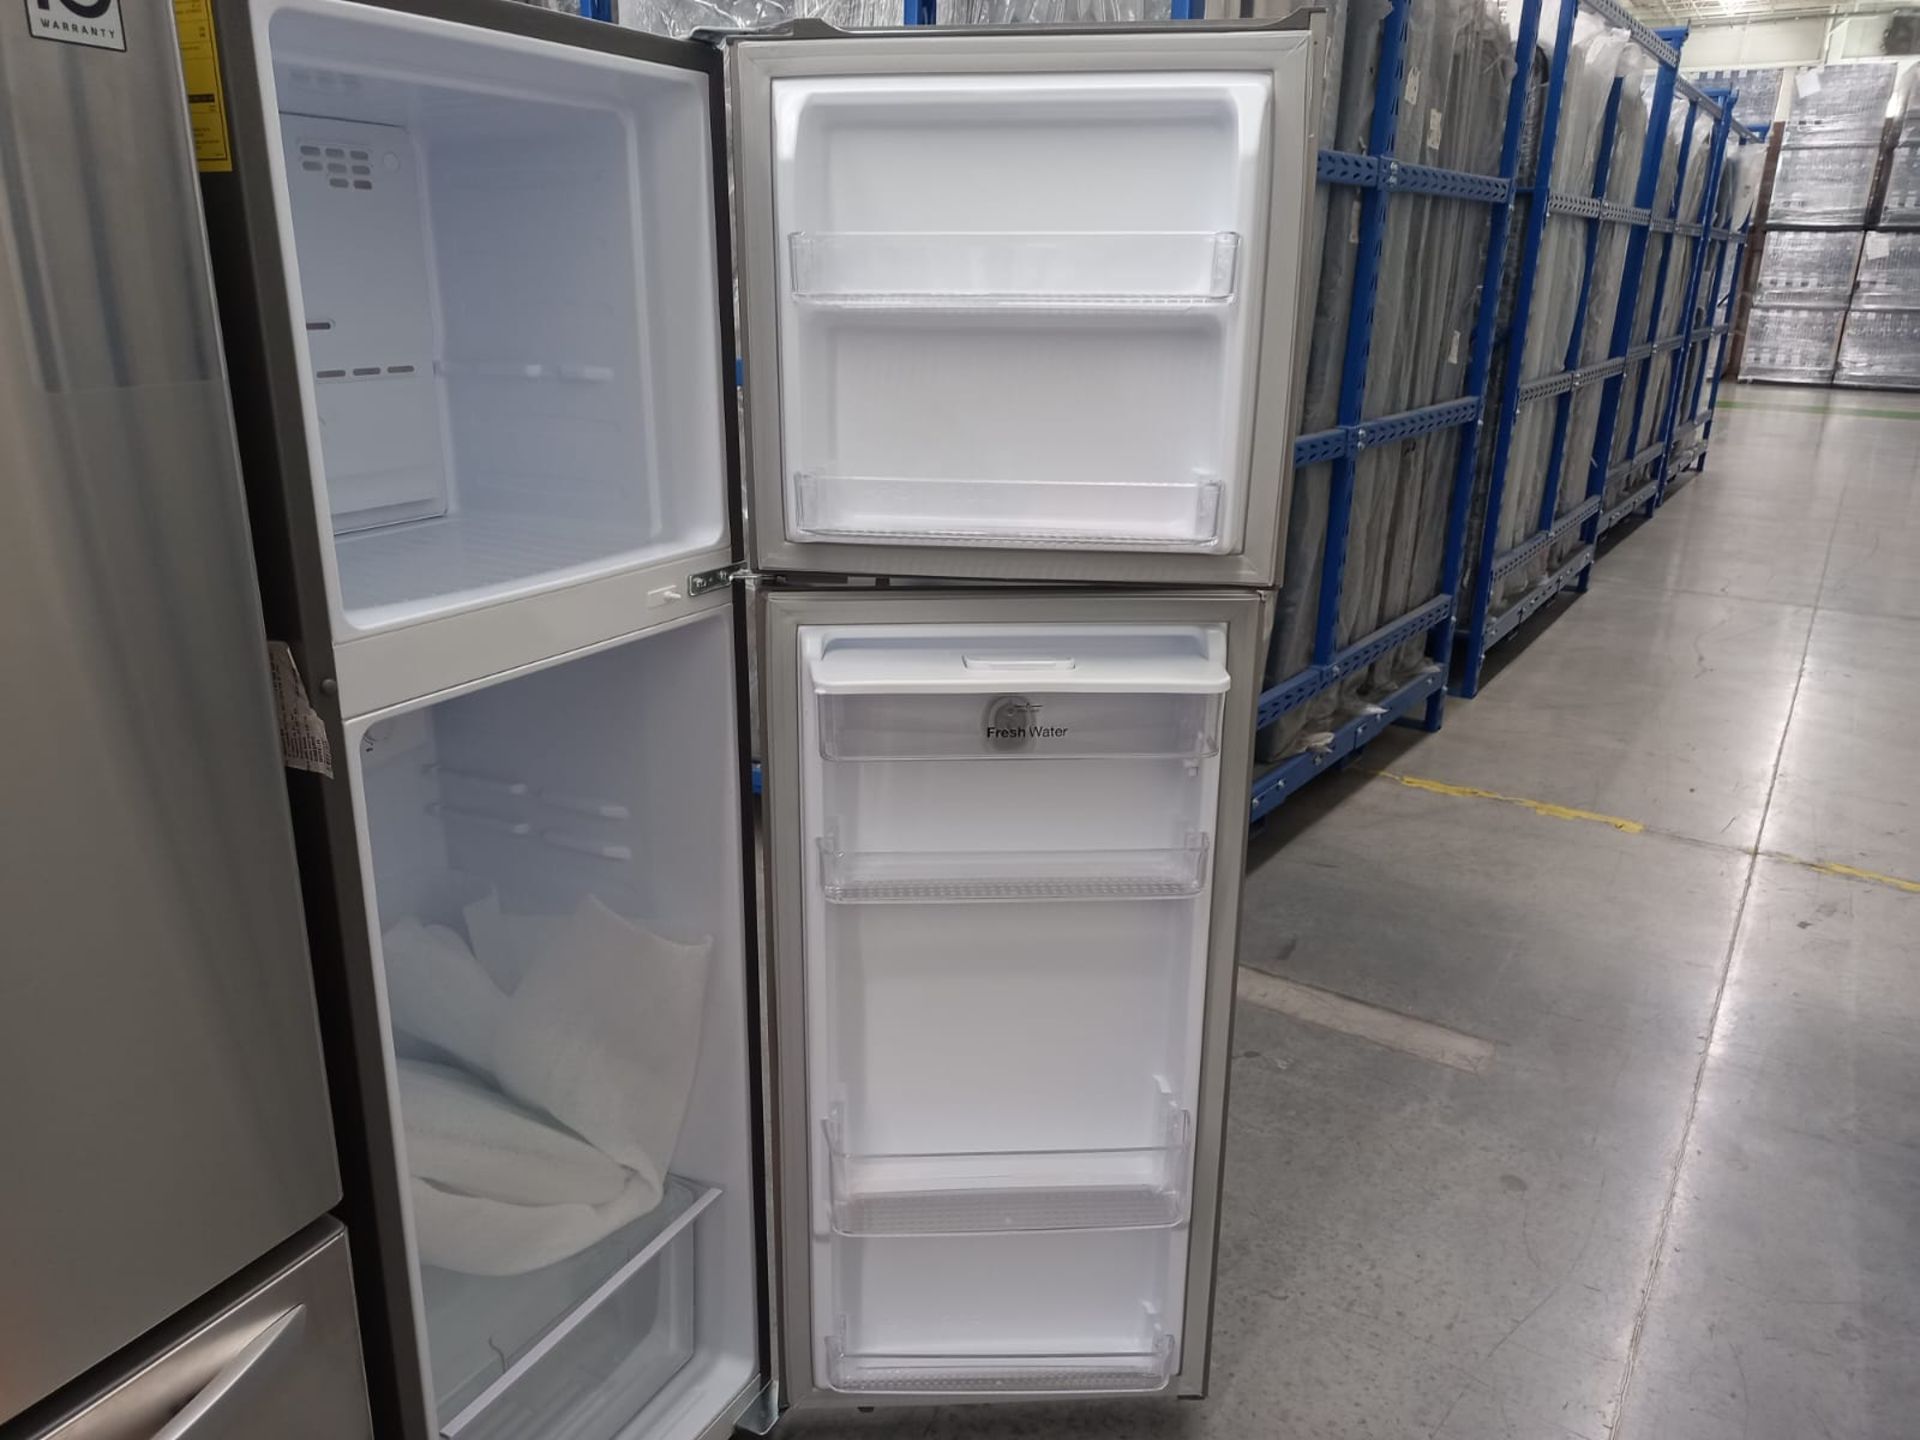 Lote De 2 Refrigeradores: 1 Refrigerador Marca LG, 1 Refrigerador Marca Winia, Distintos Modelos - Image 16 of 18